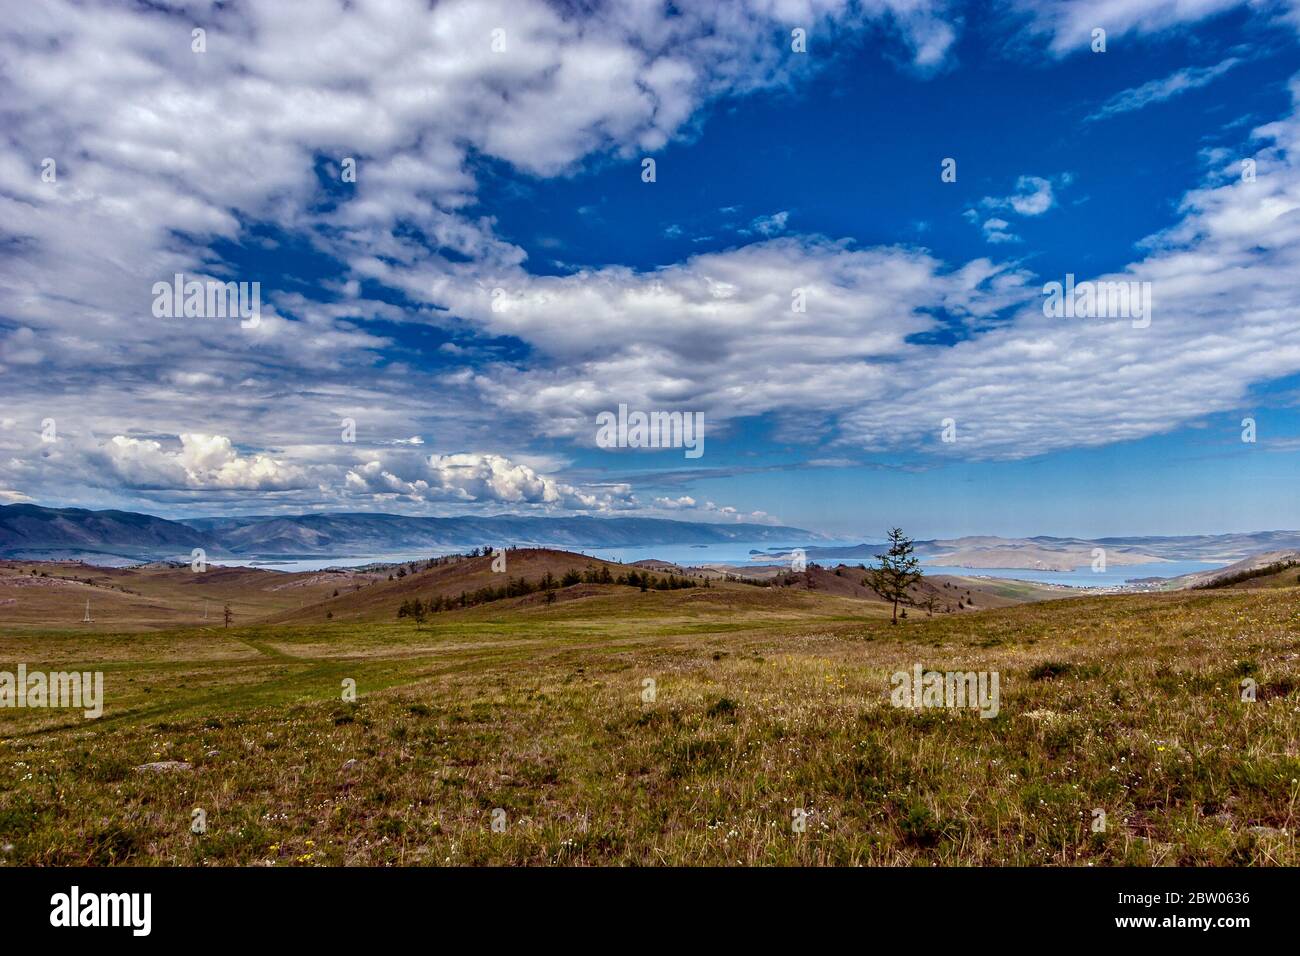 Incredibile paesaggio di colline vicino al lago Baikal e nuvole contro un cielo blu. Erba verde sul terreno. Lontano le montagne. Orizzontale. Foto Stock